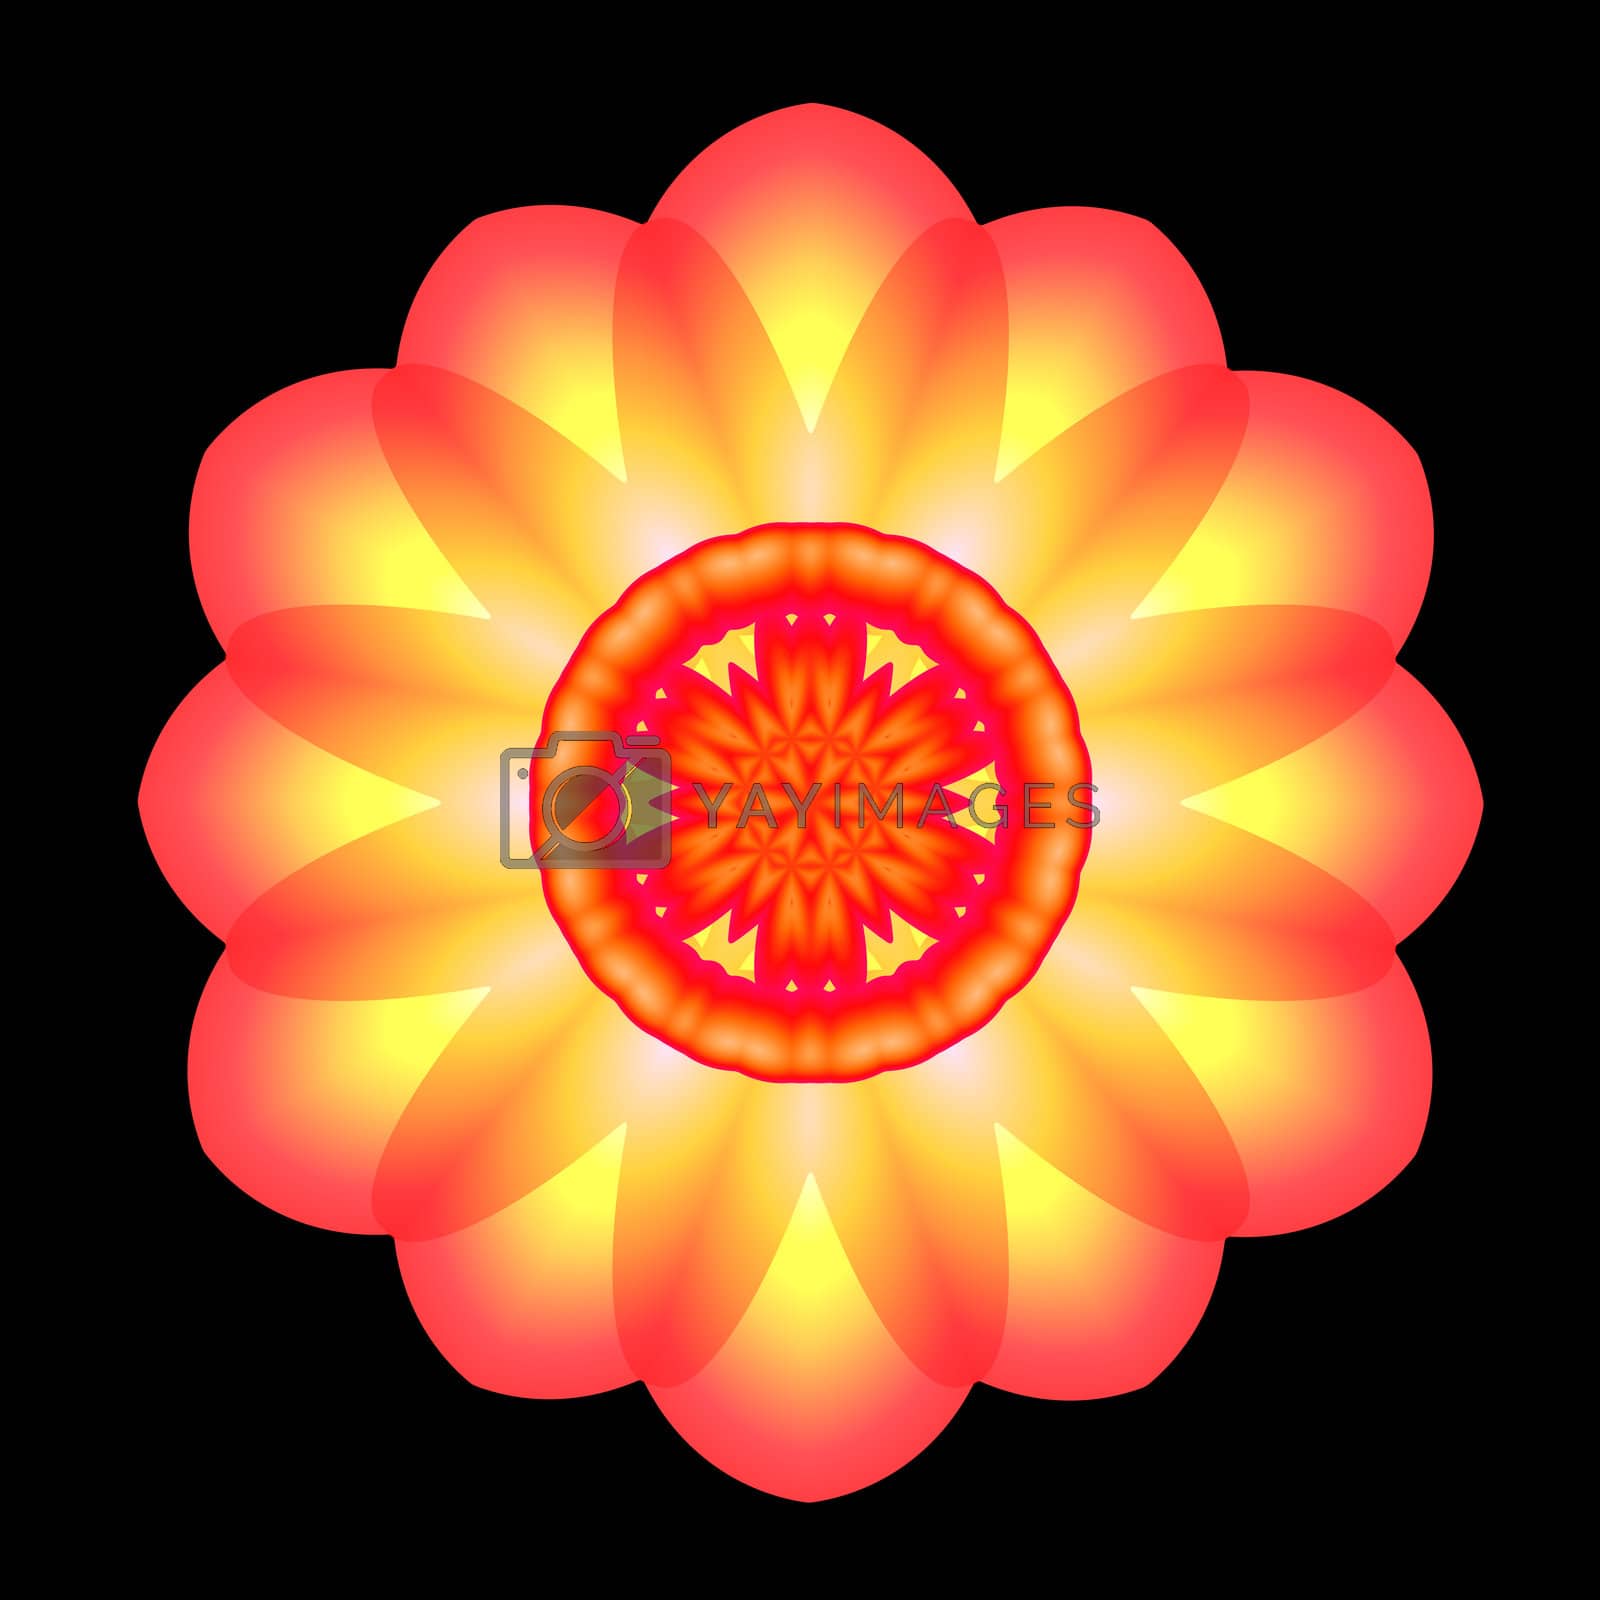 Royalty free image of Glowing Orange and Yellow Mandala by patballard